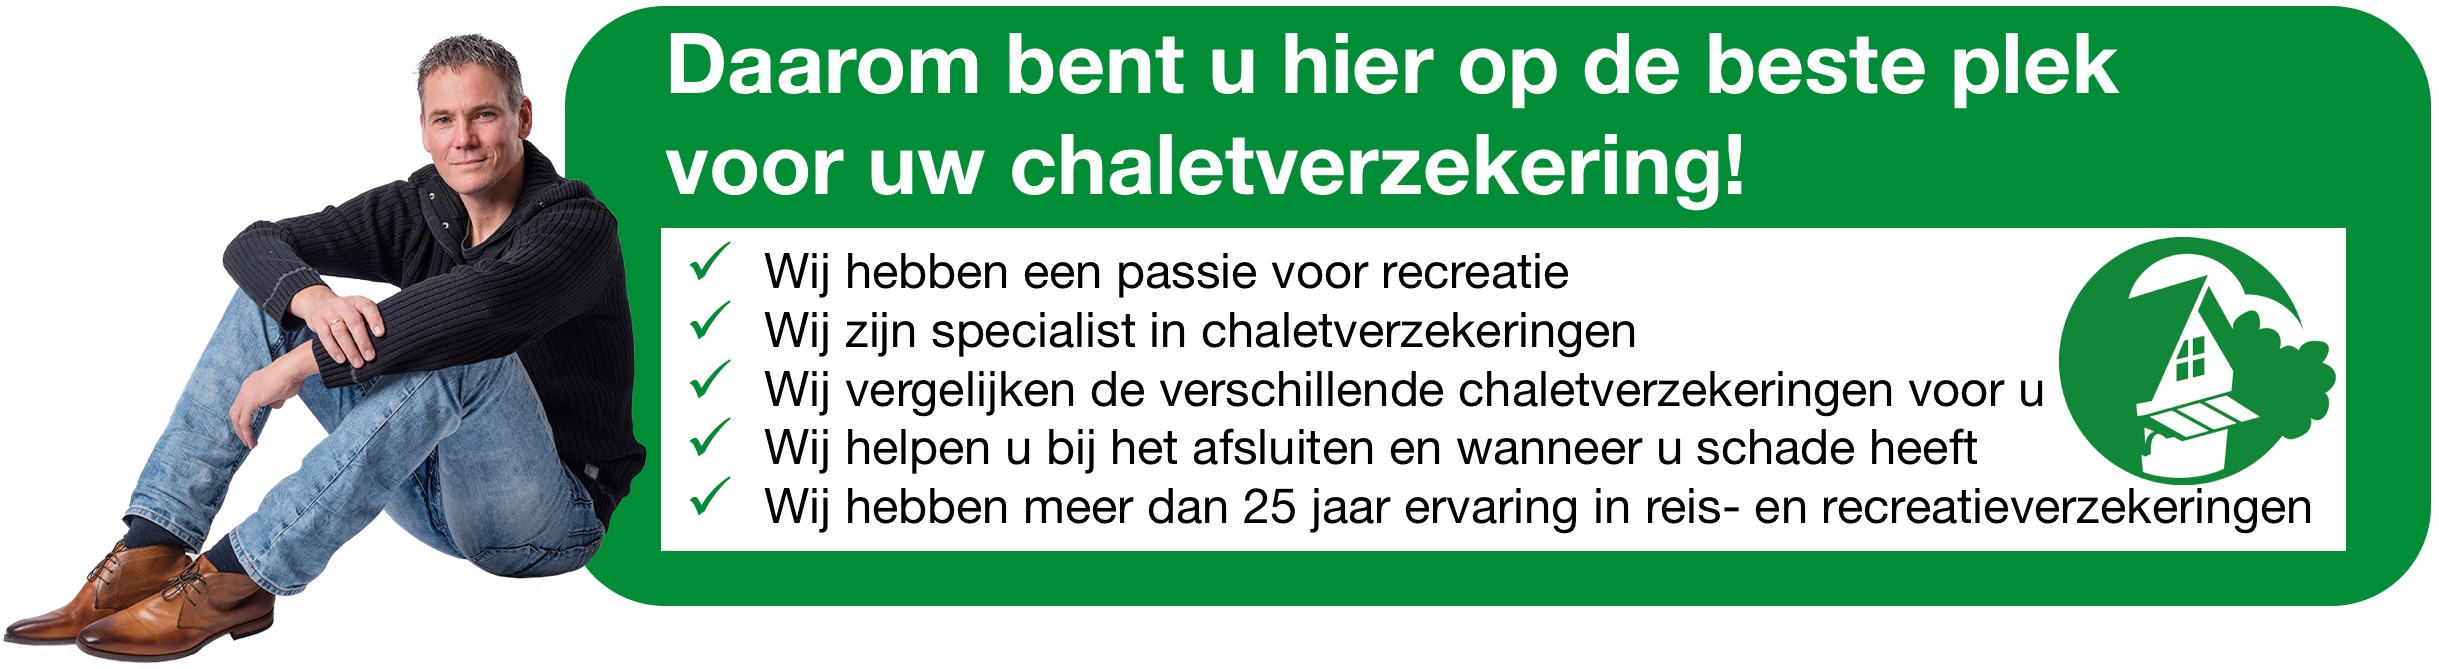 Chalet-verzekeren.nl voor de beste chaletverzekering